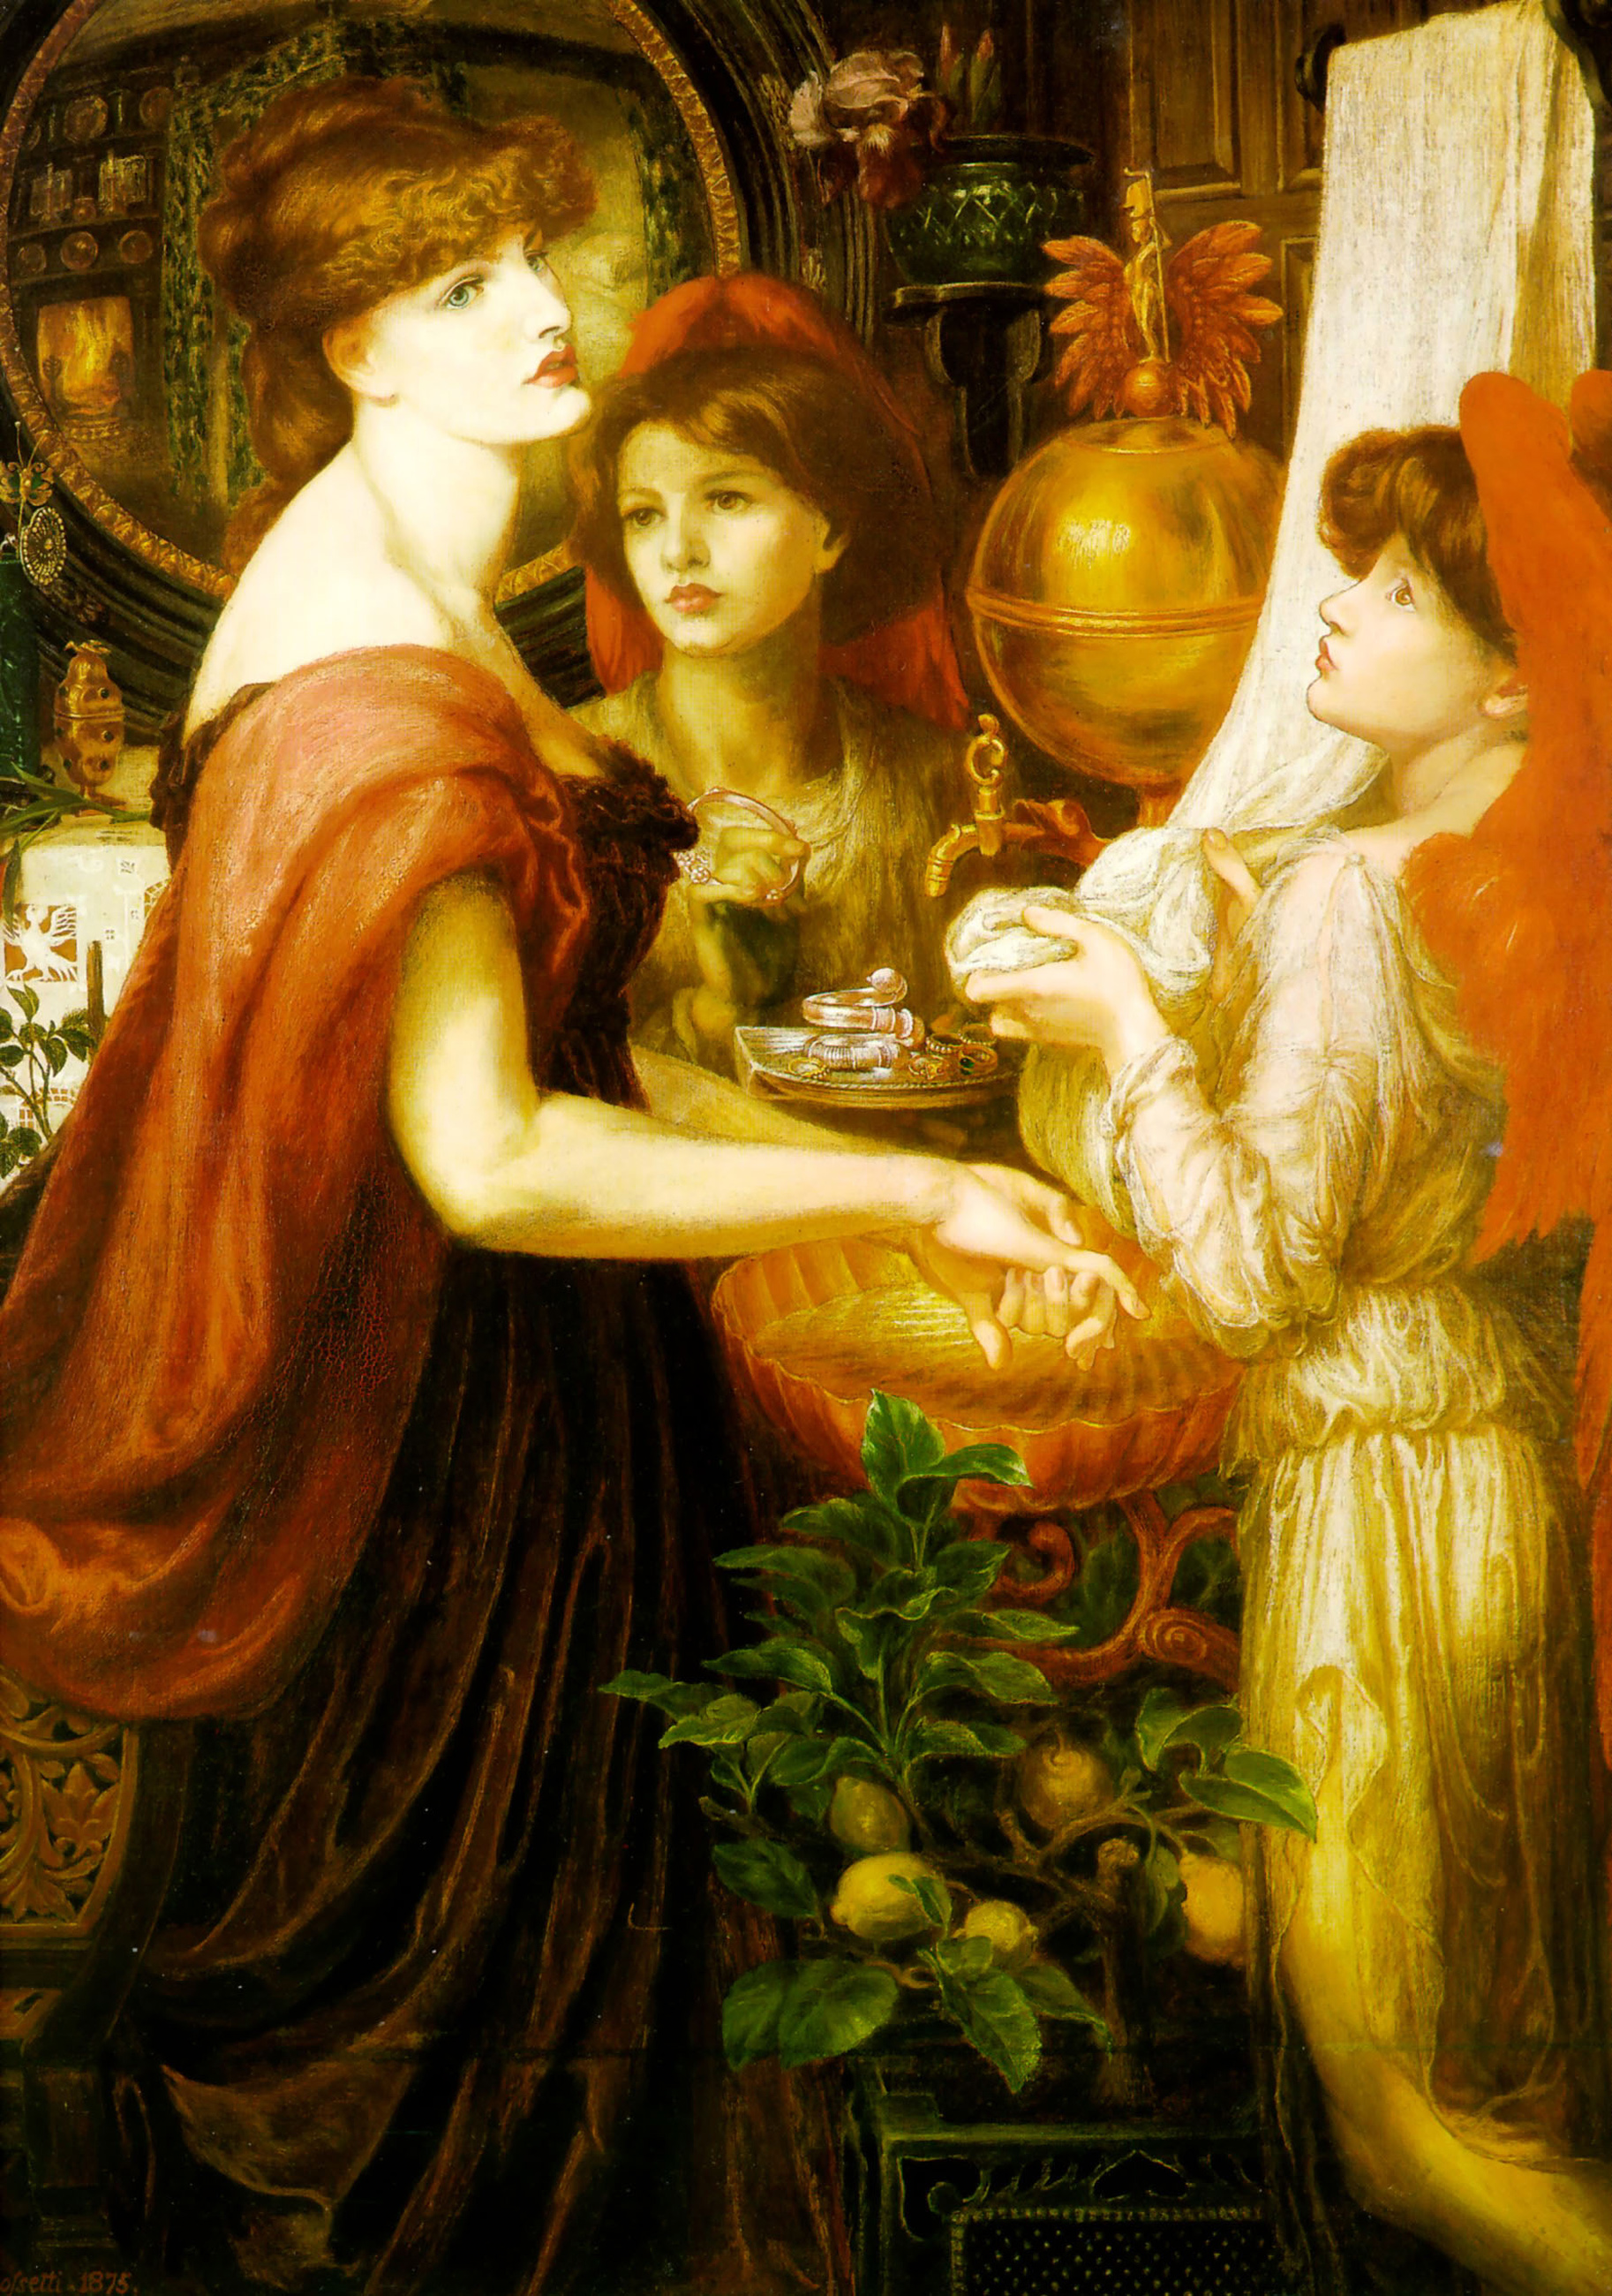 Güzel El by Dante Gabriel Rossetti - 1875/1875 